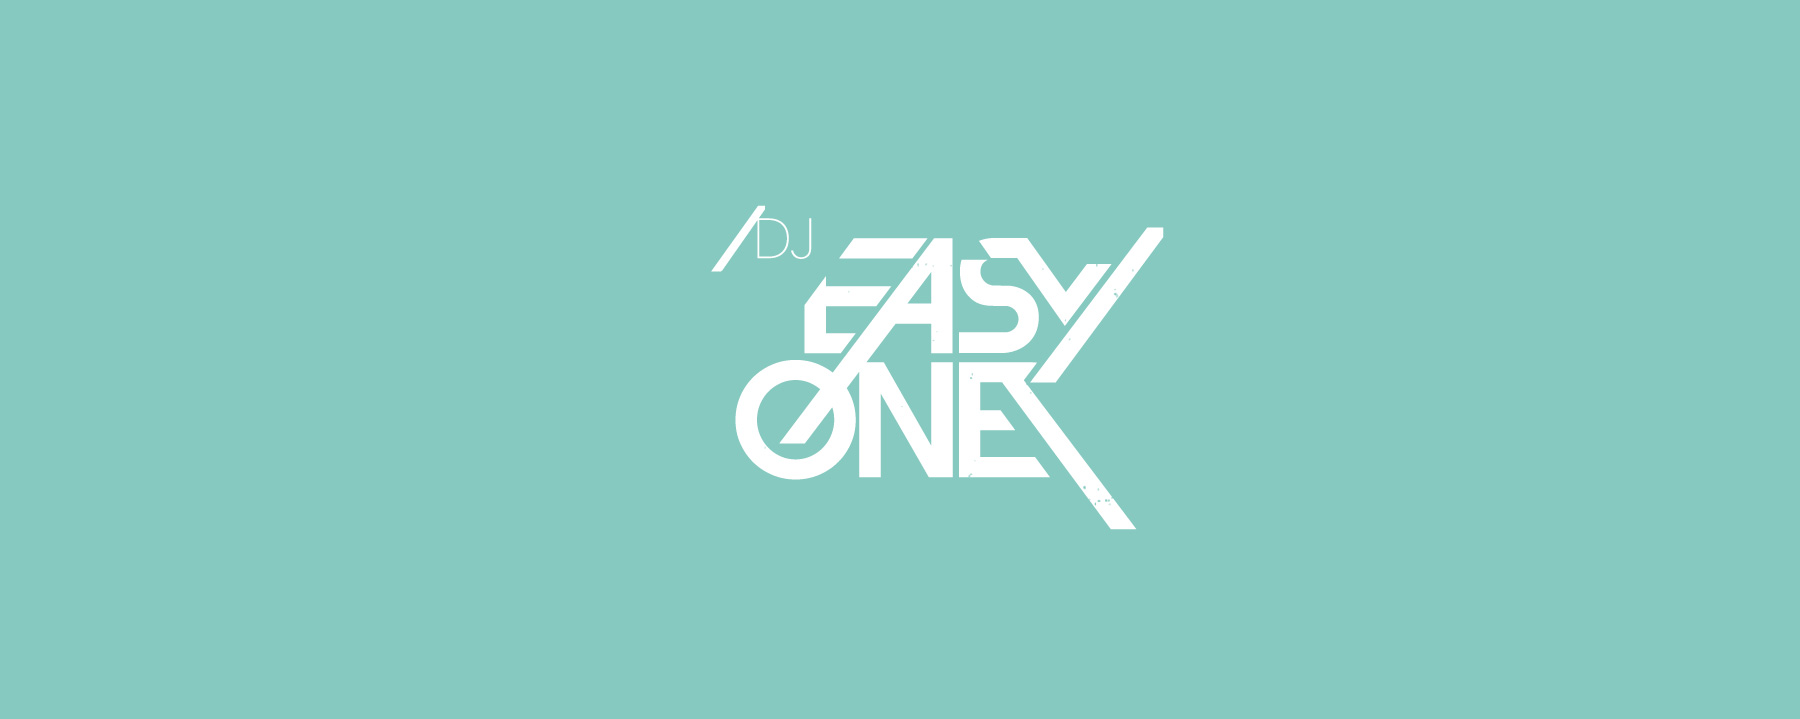 Logo Design für Dj Easyone | Mannheim | by Ilyas Susever